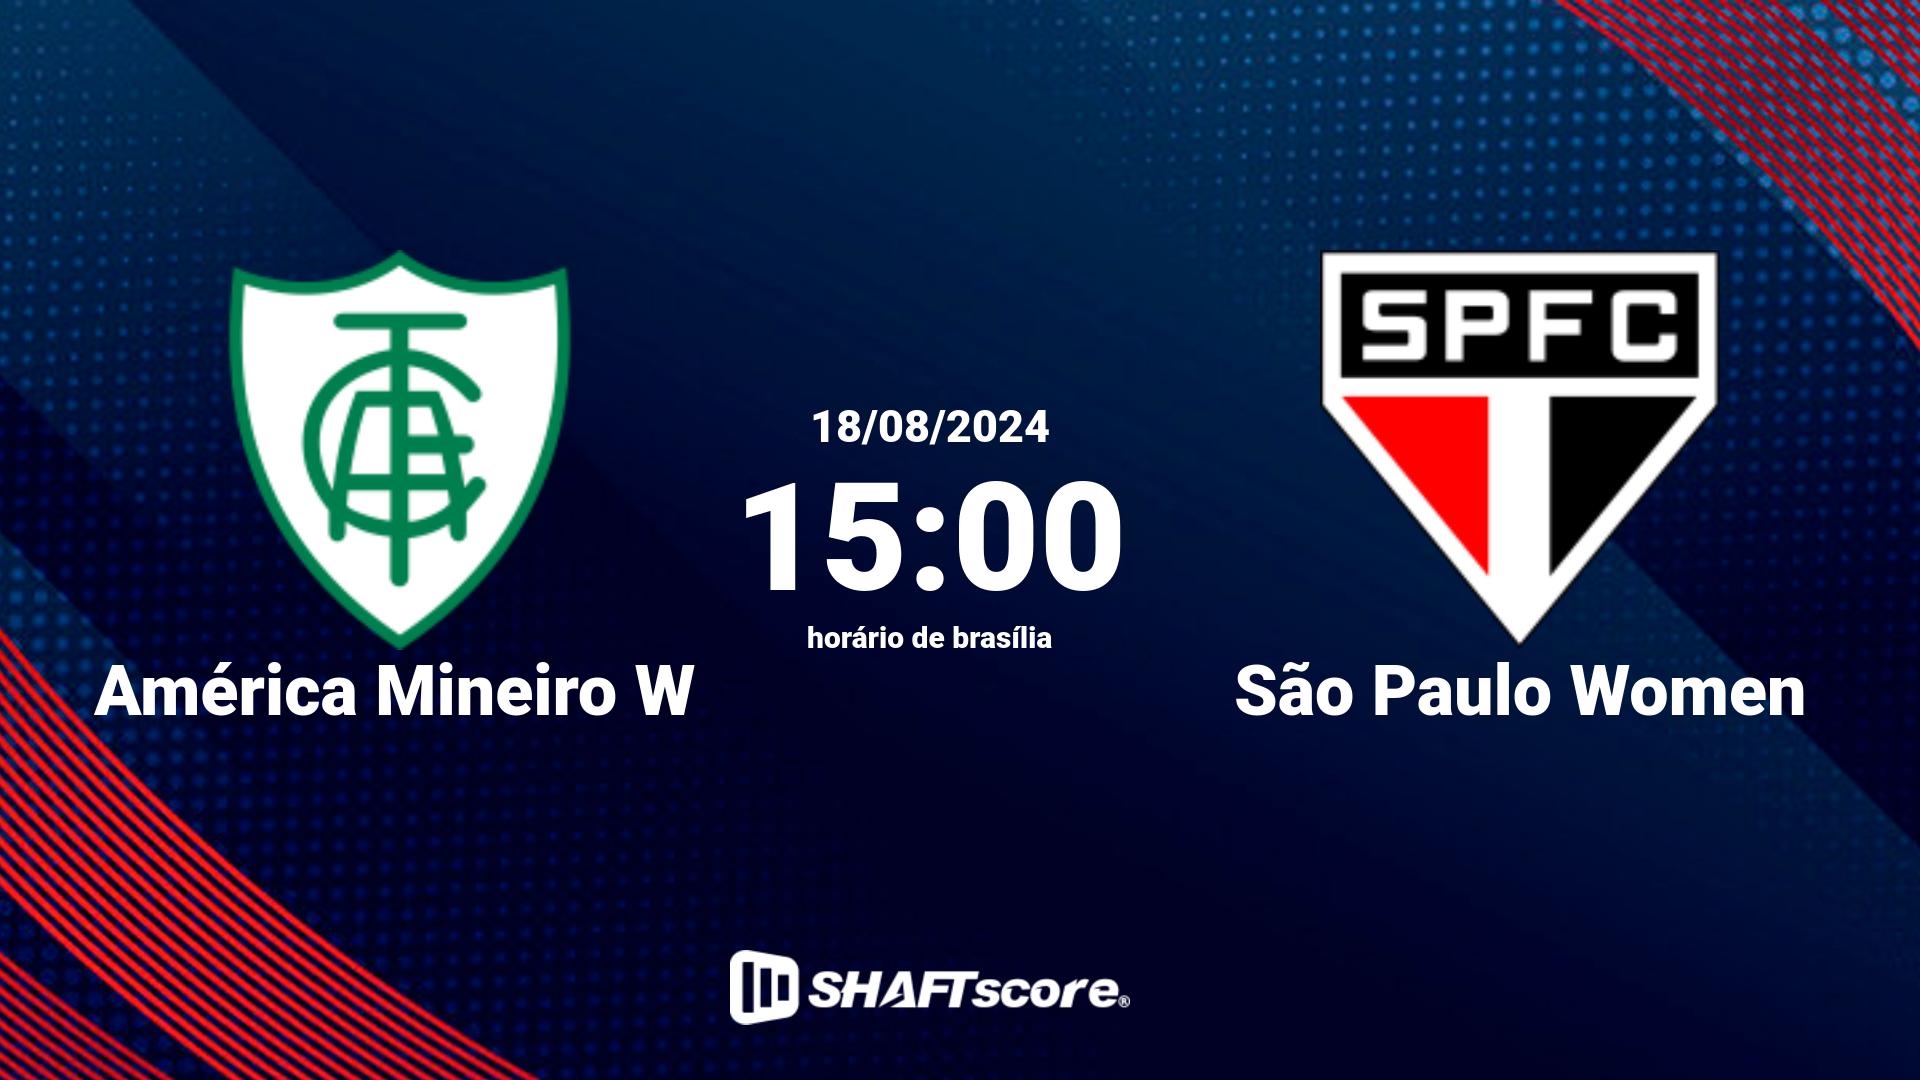 Estatísticas do jogo América Mineiro W vs São Paulo Women 23.06 15:00